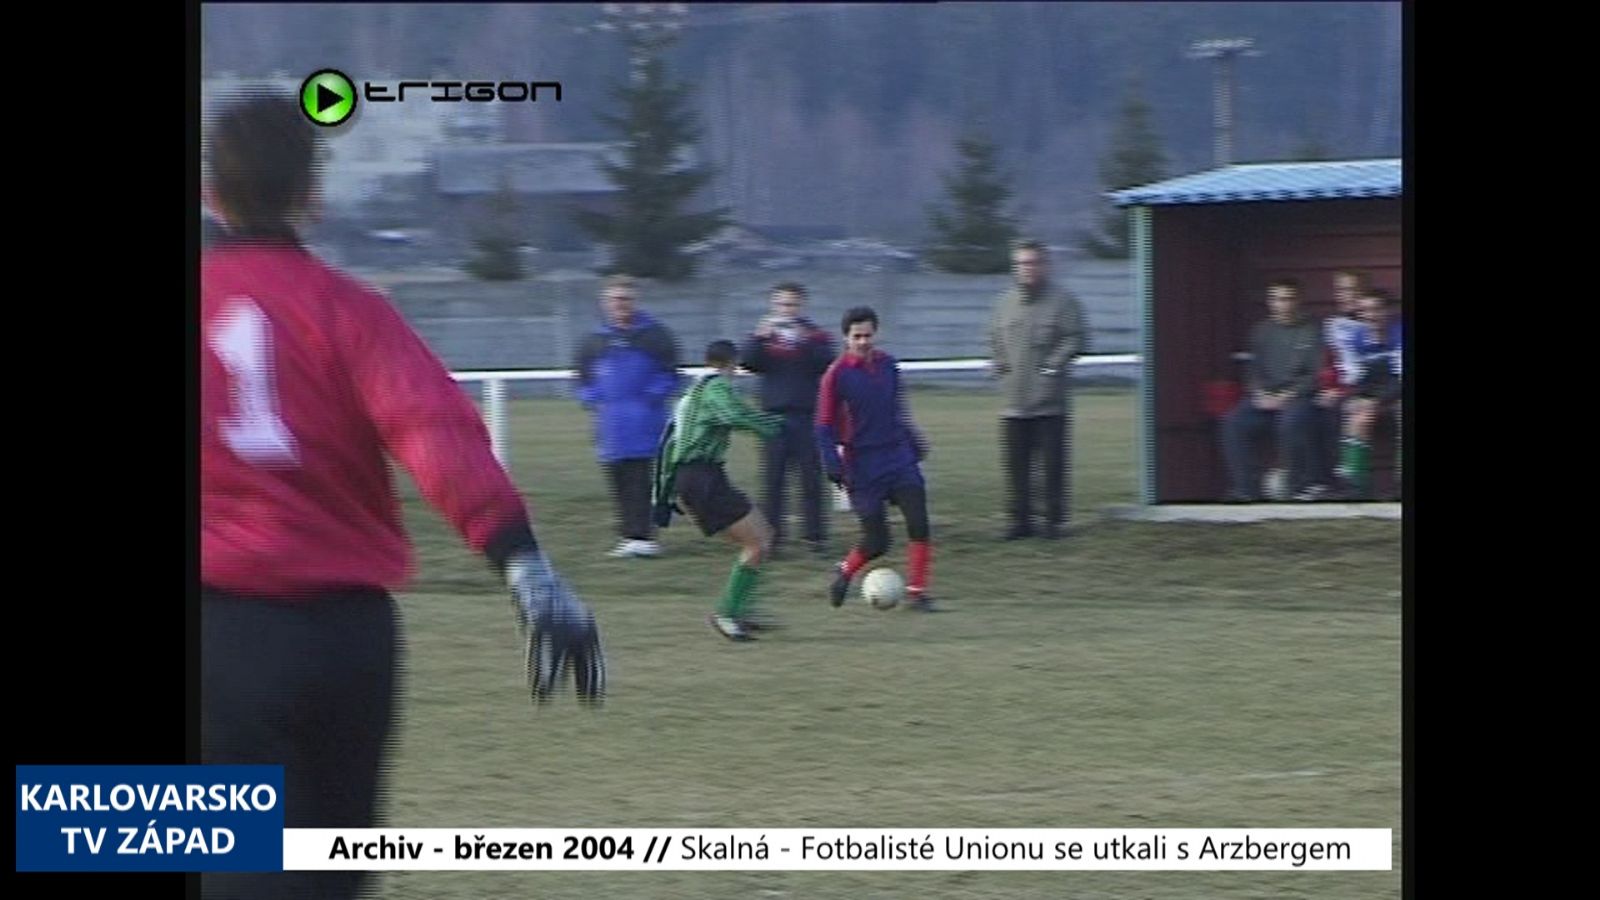 2004 – Skalná: Fotbalisté Unionu se utkali s Arzbergem (TV Západ)